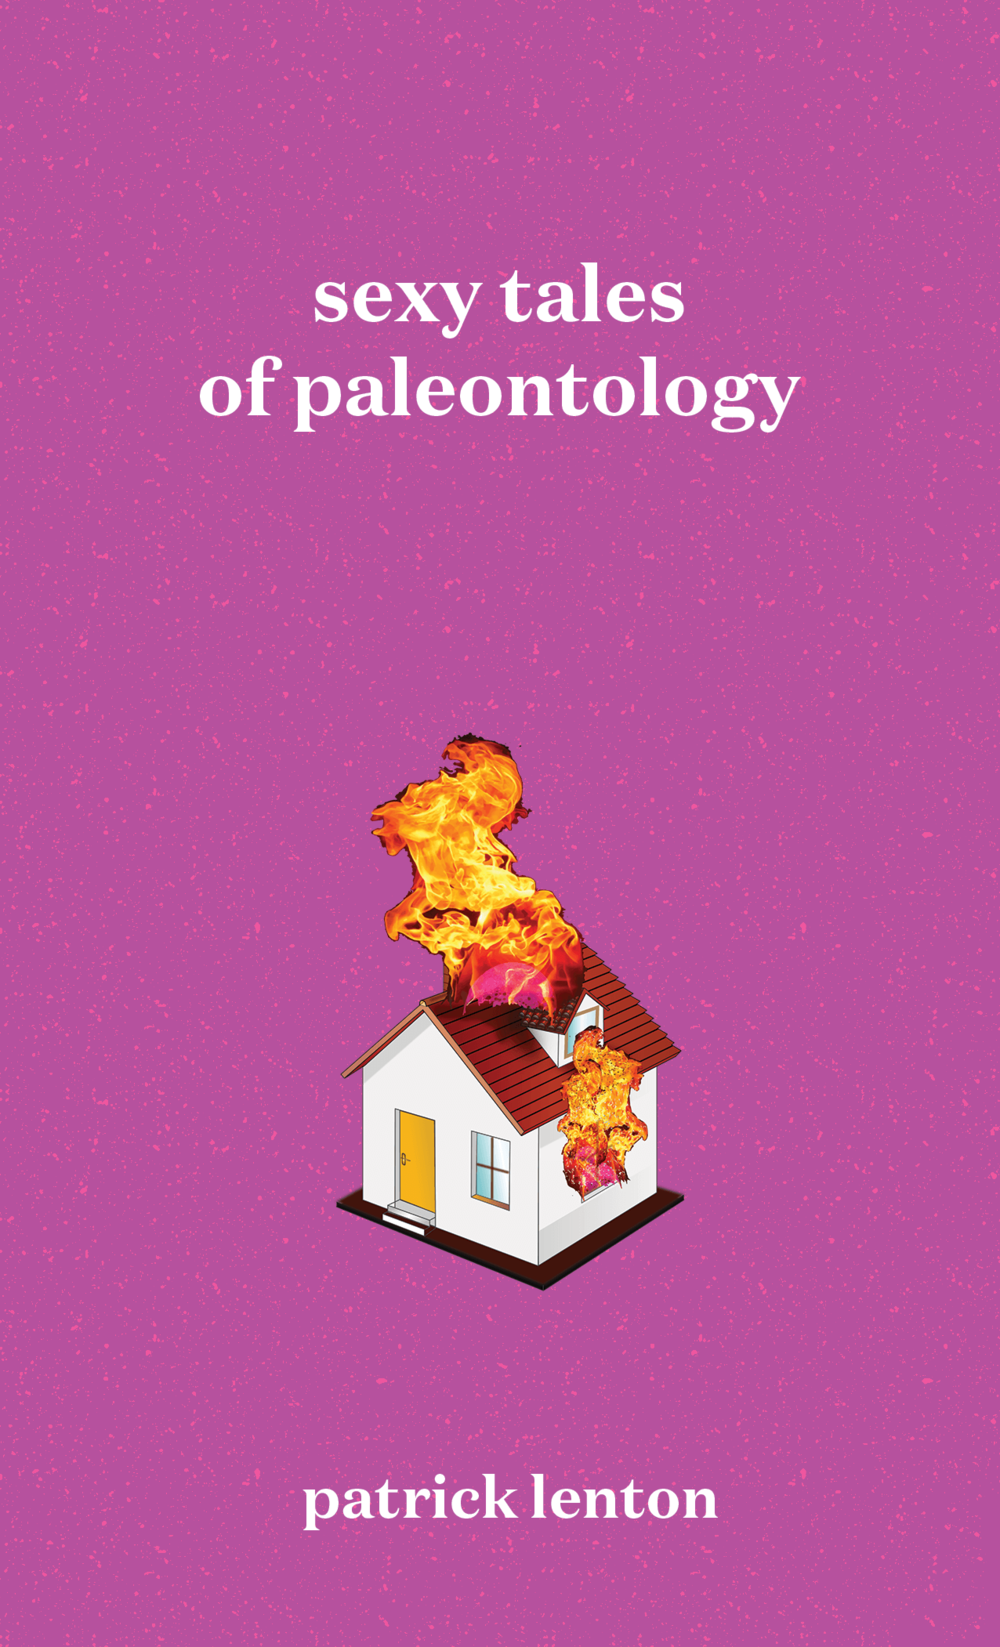 Sexy Tales of Paleontology, by Patrick Lenton